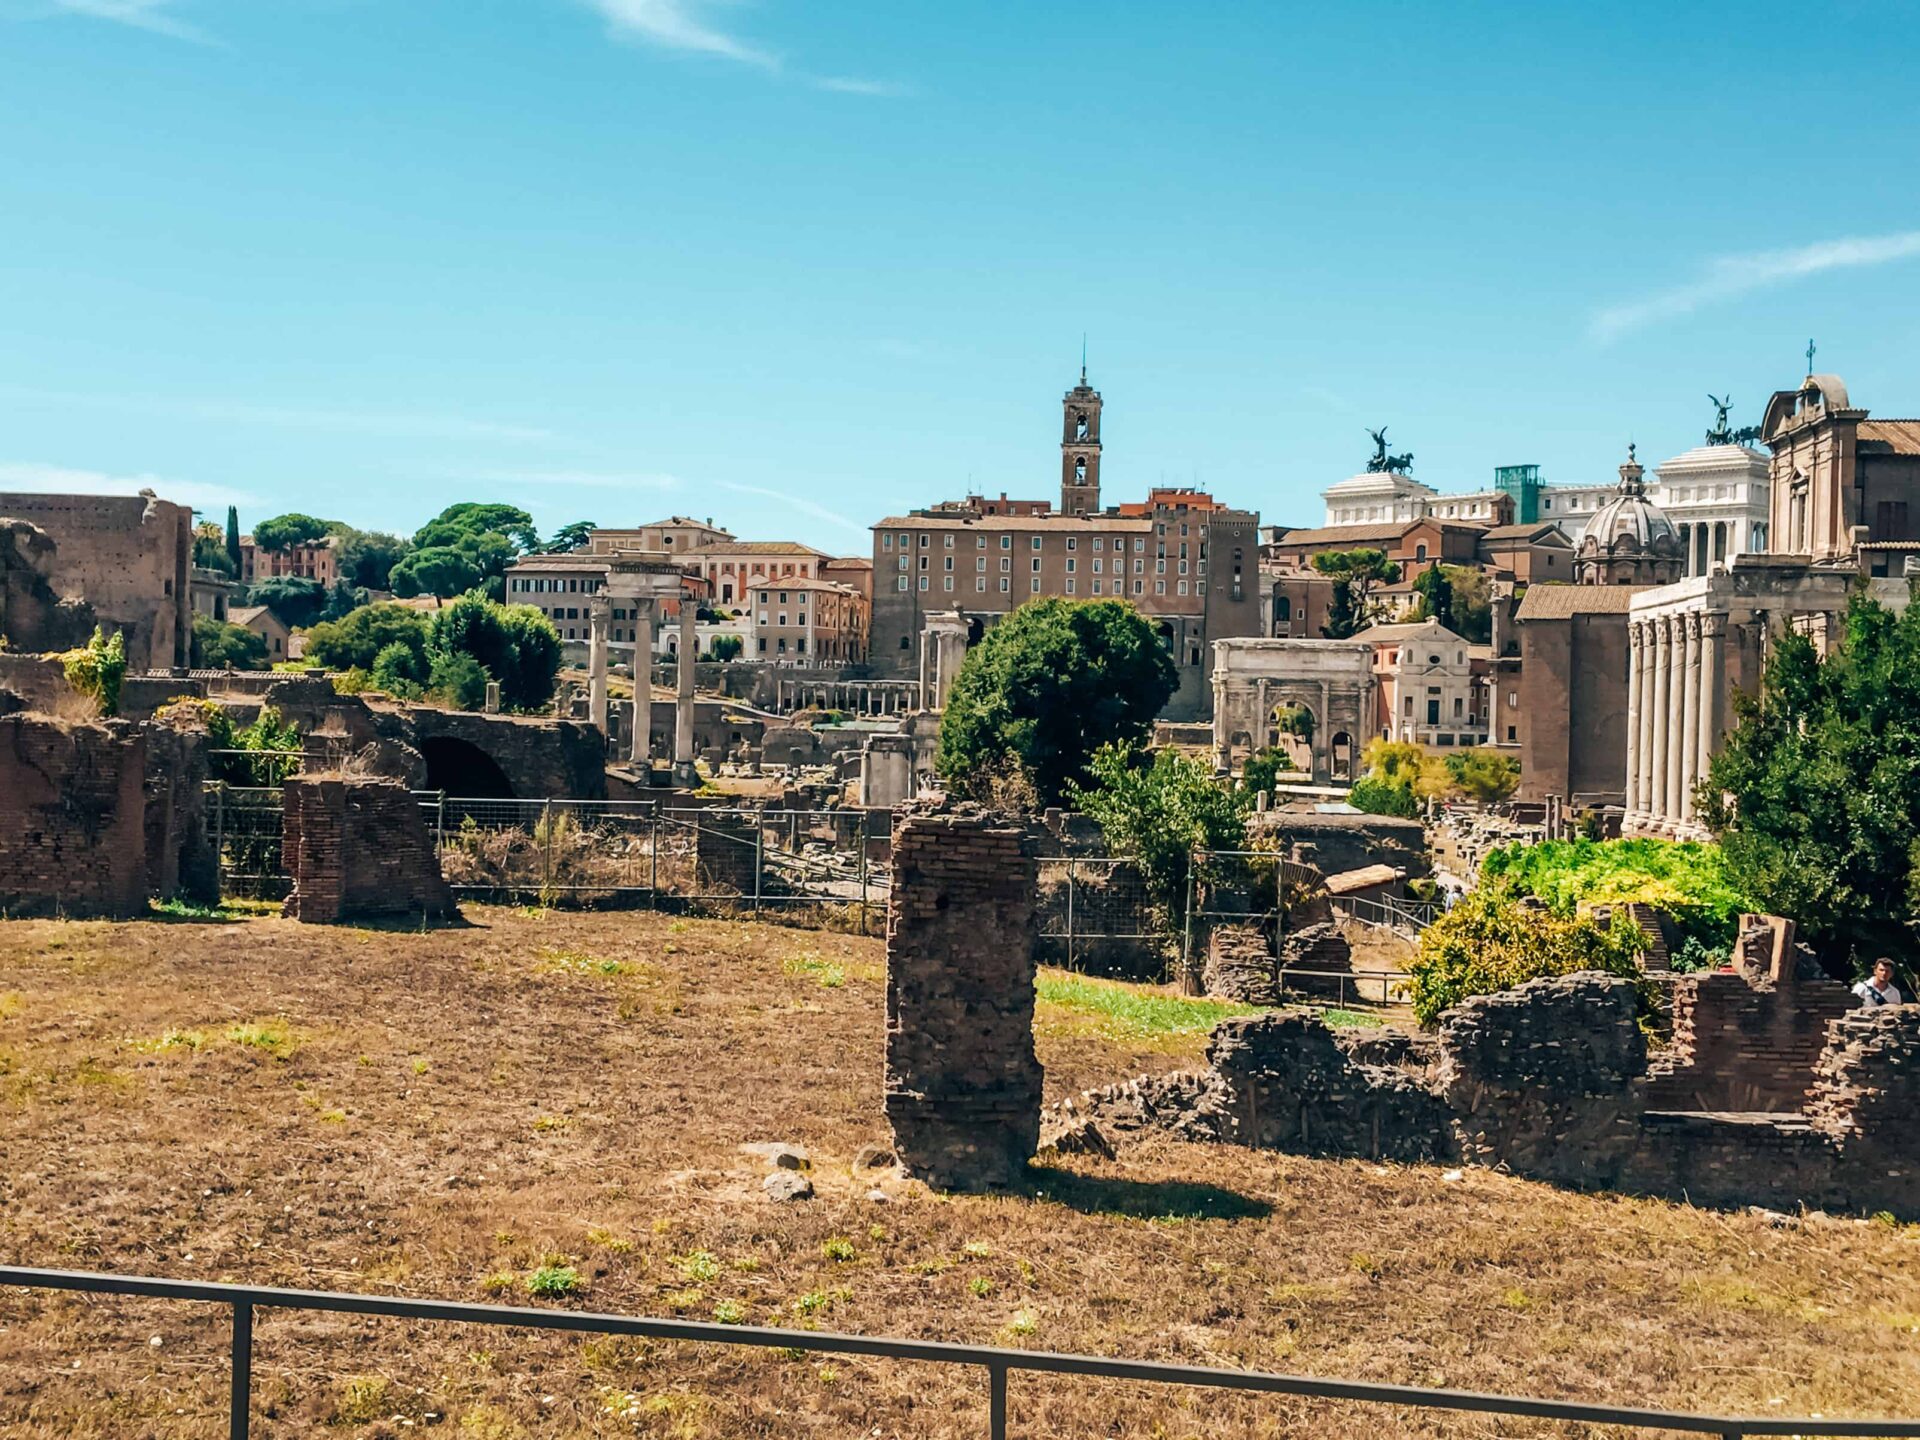 Rome - Forum Romanum